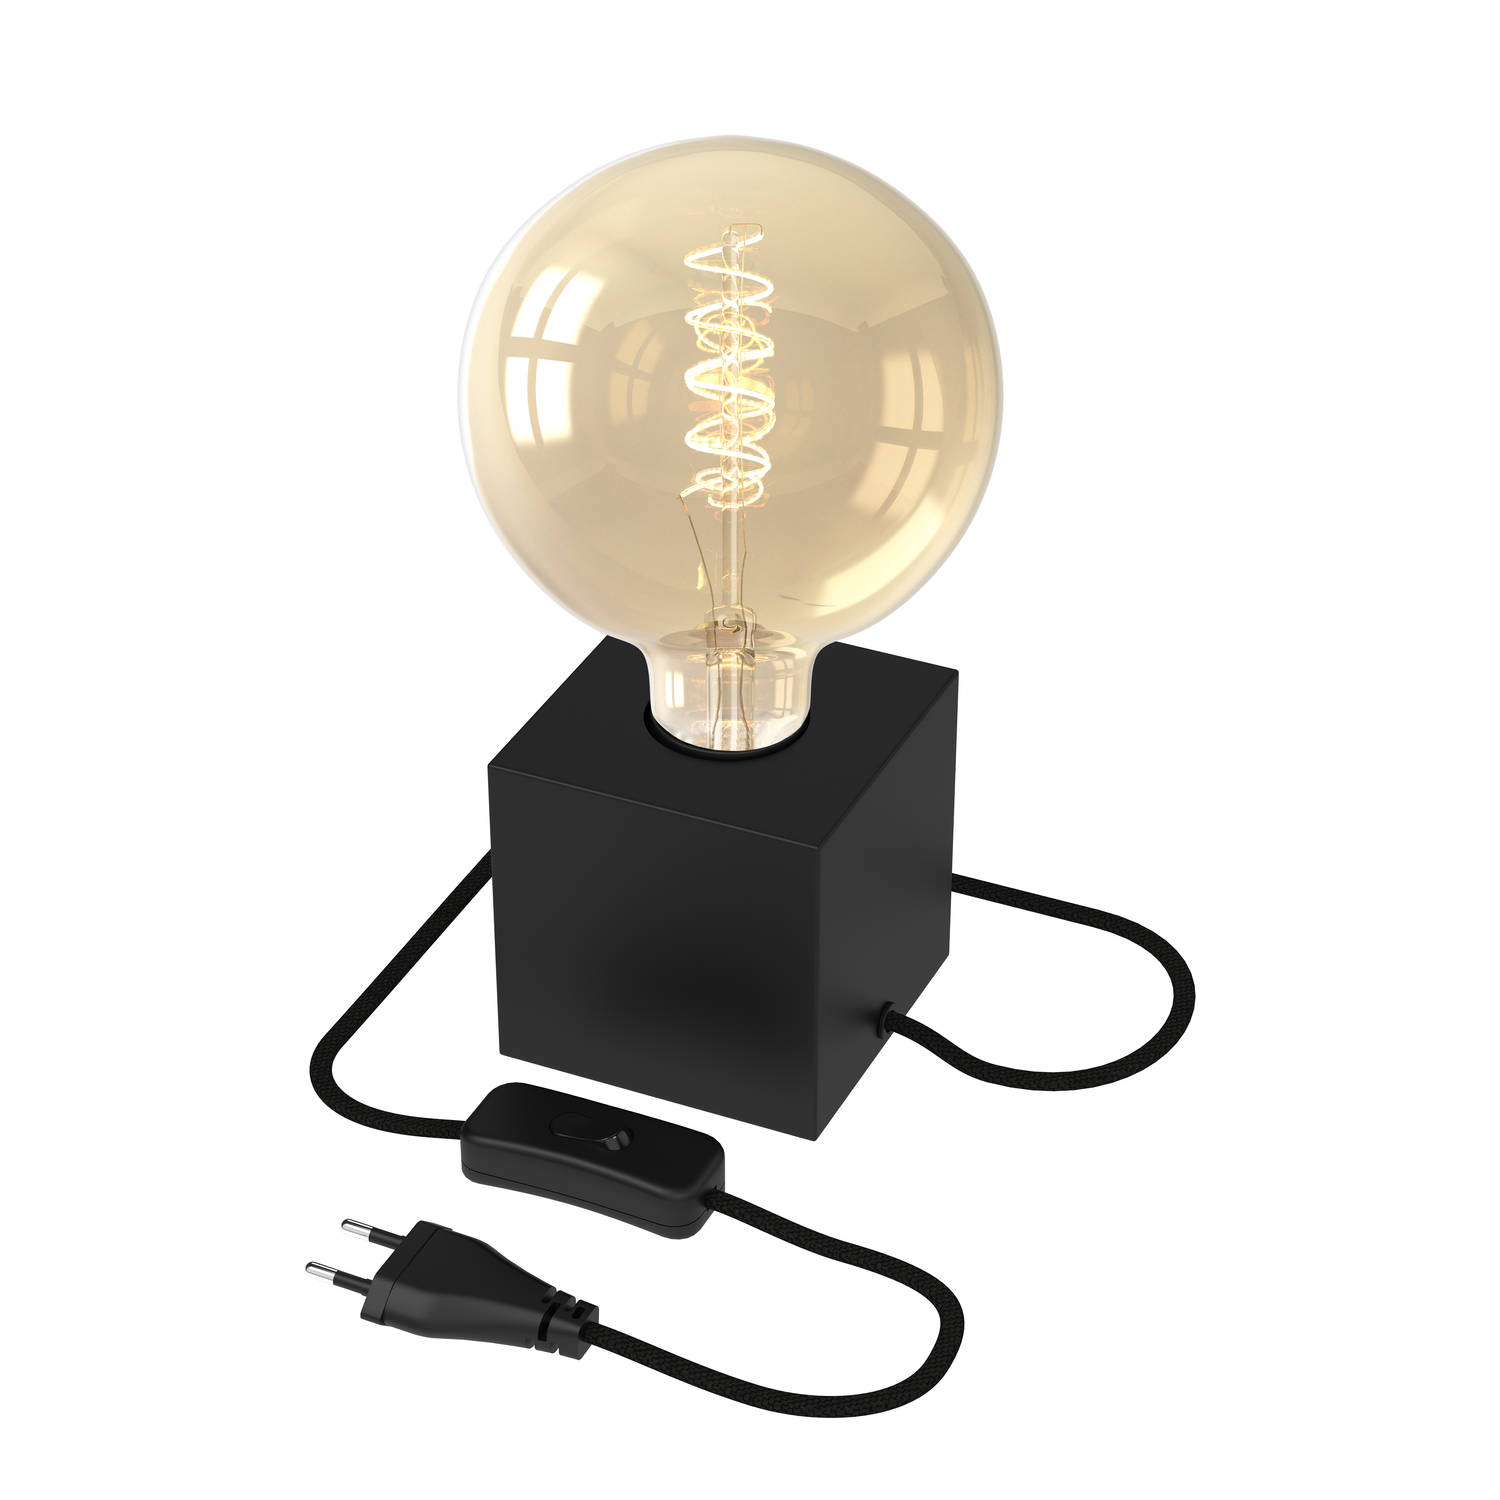 Calex Tafellamp Vierkant - E27 - Zwart - Incl. G125 Filament lichtbron